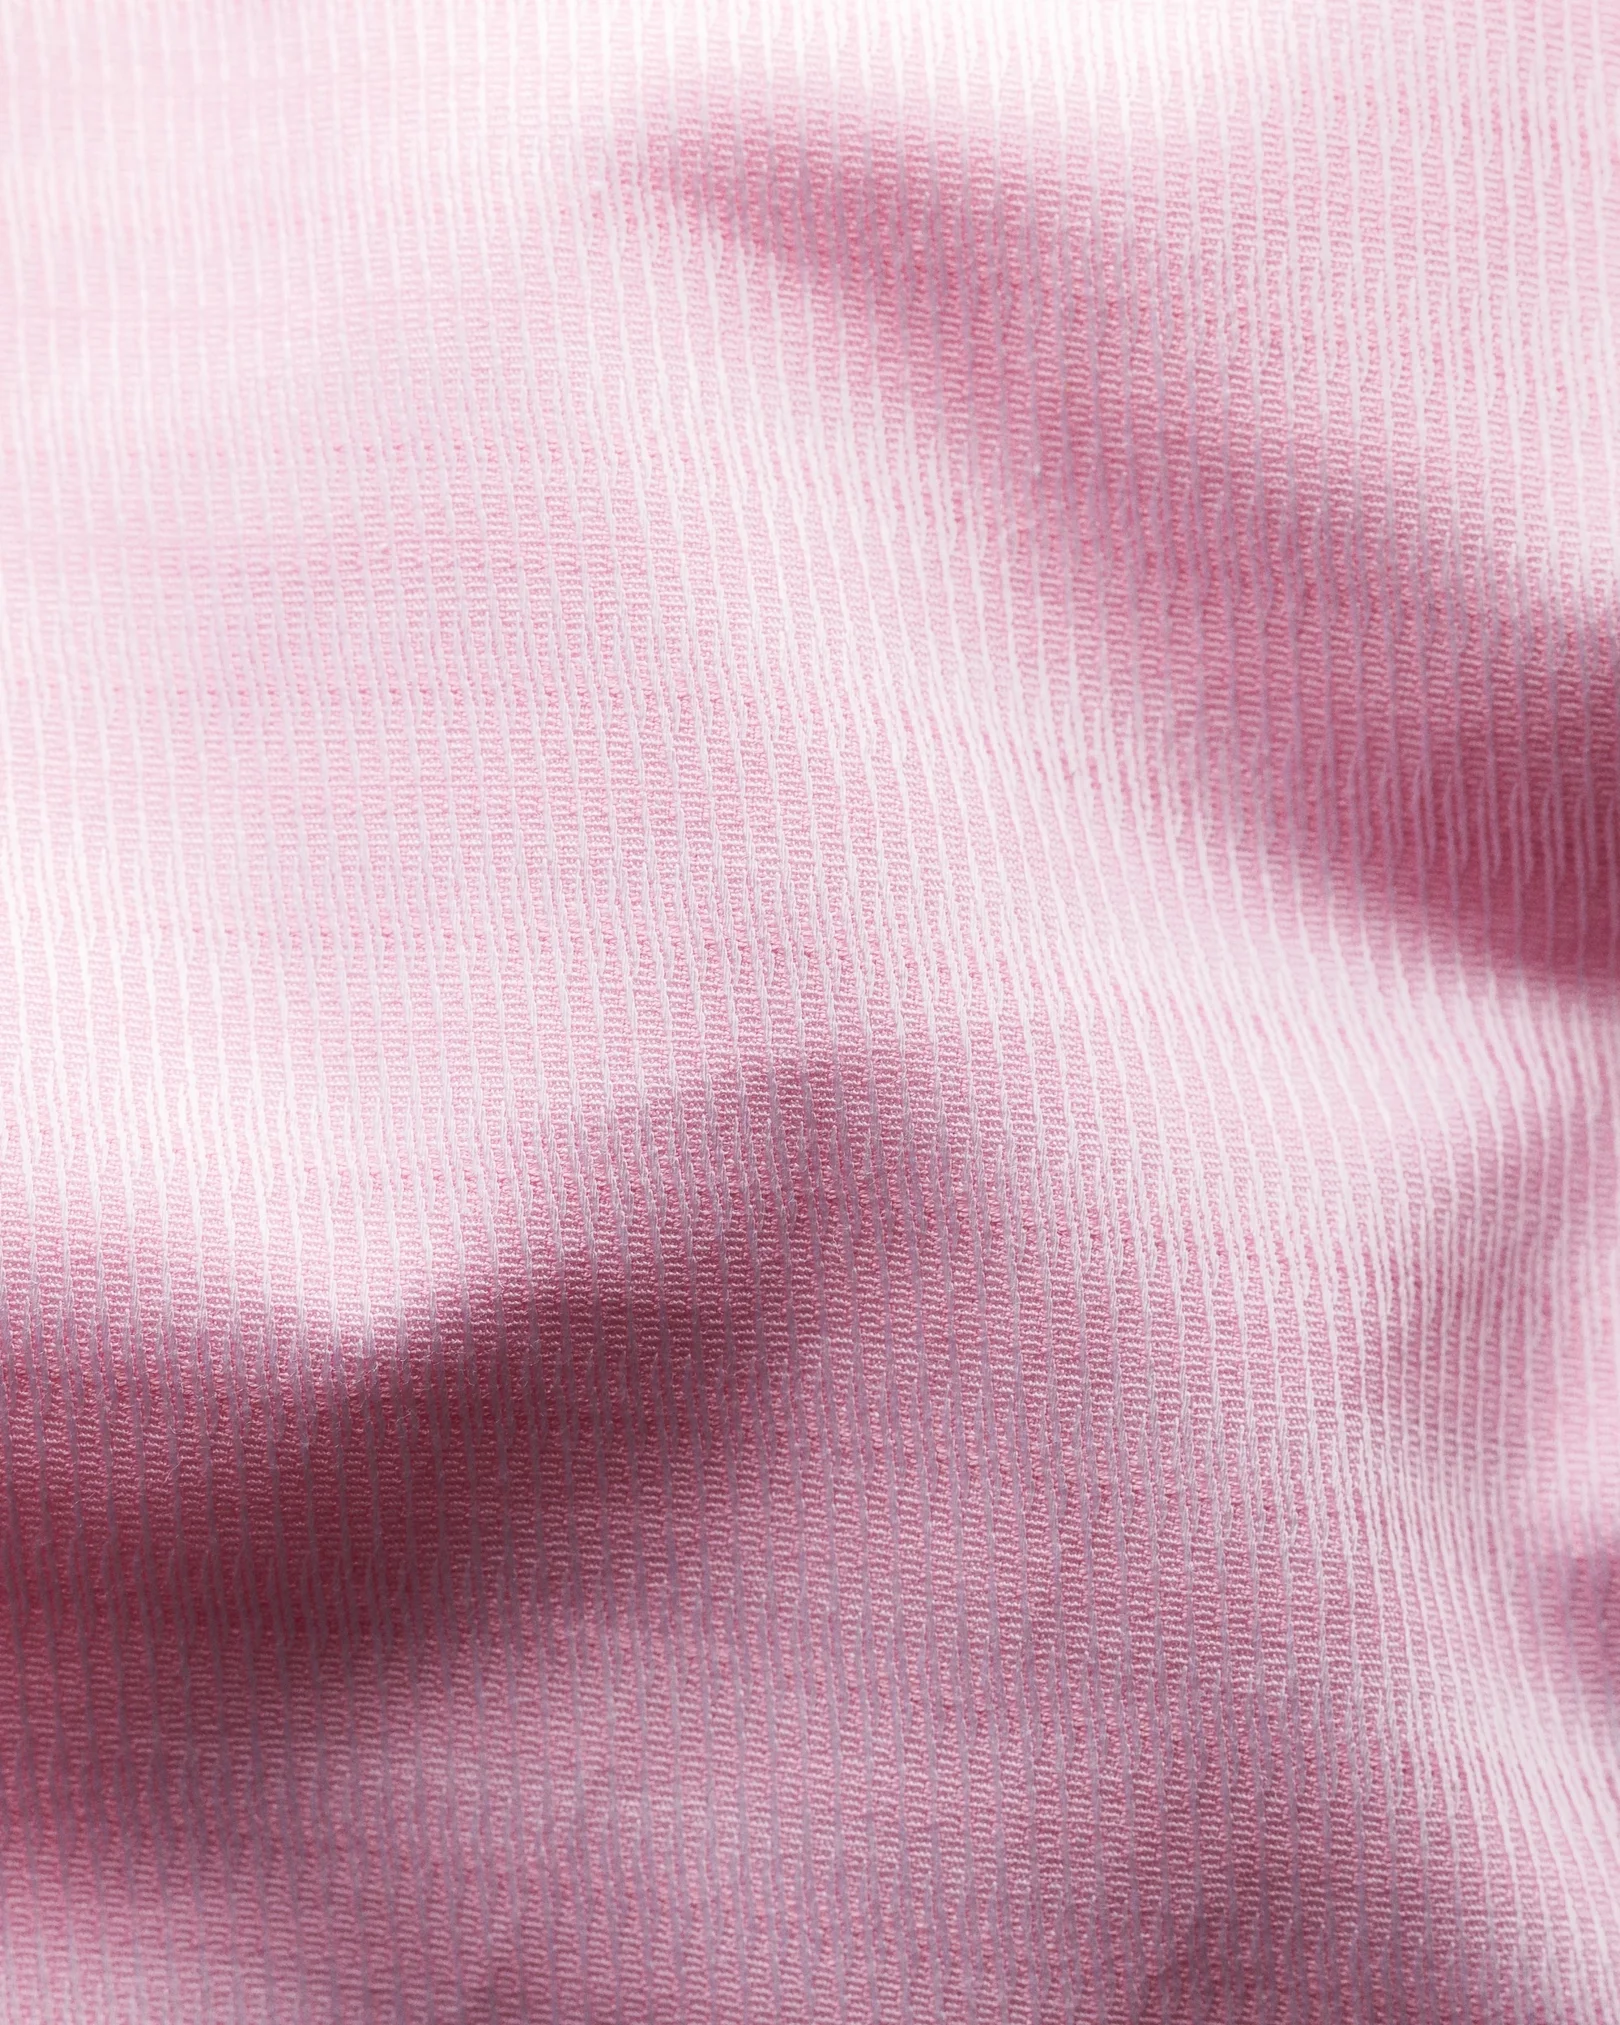 Eton - pink brocade shirt